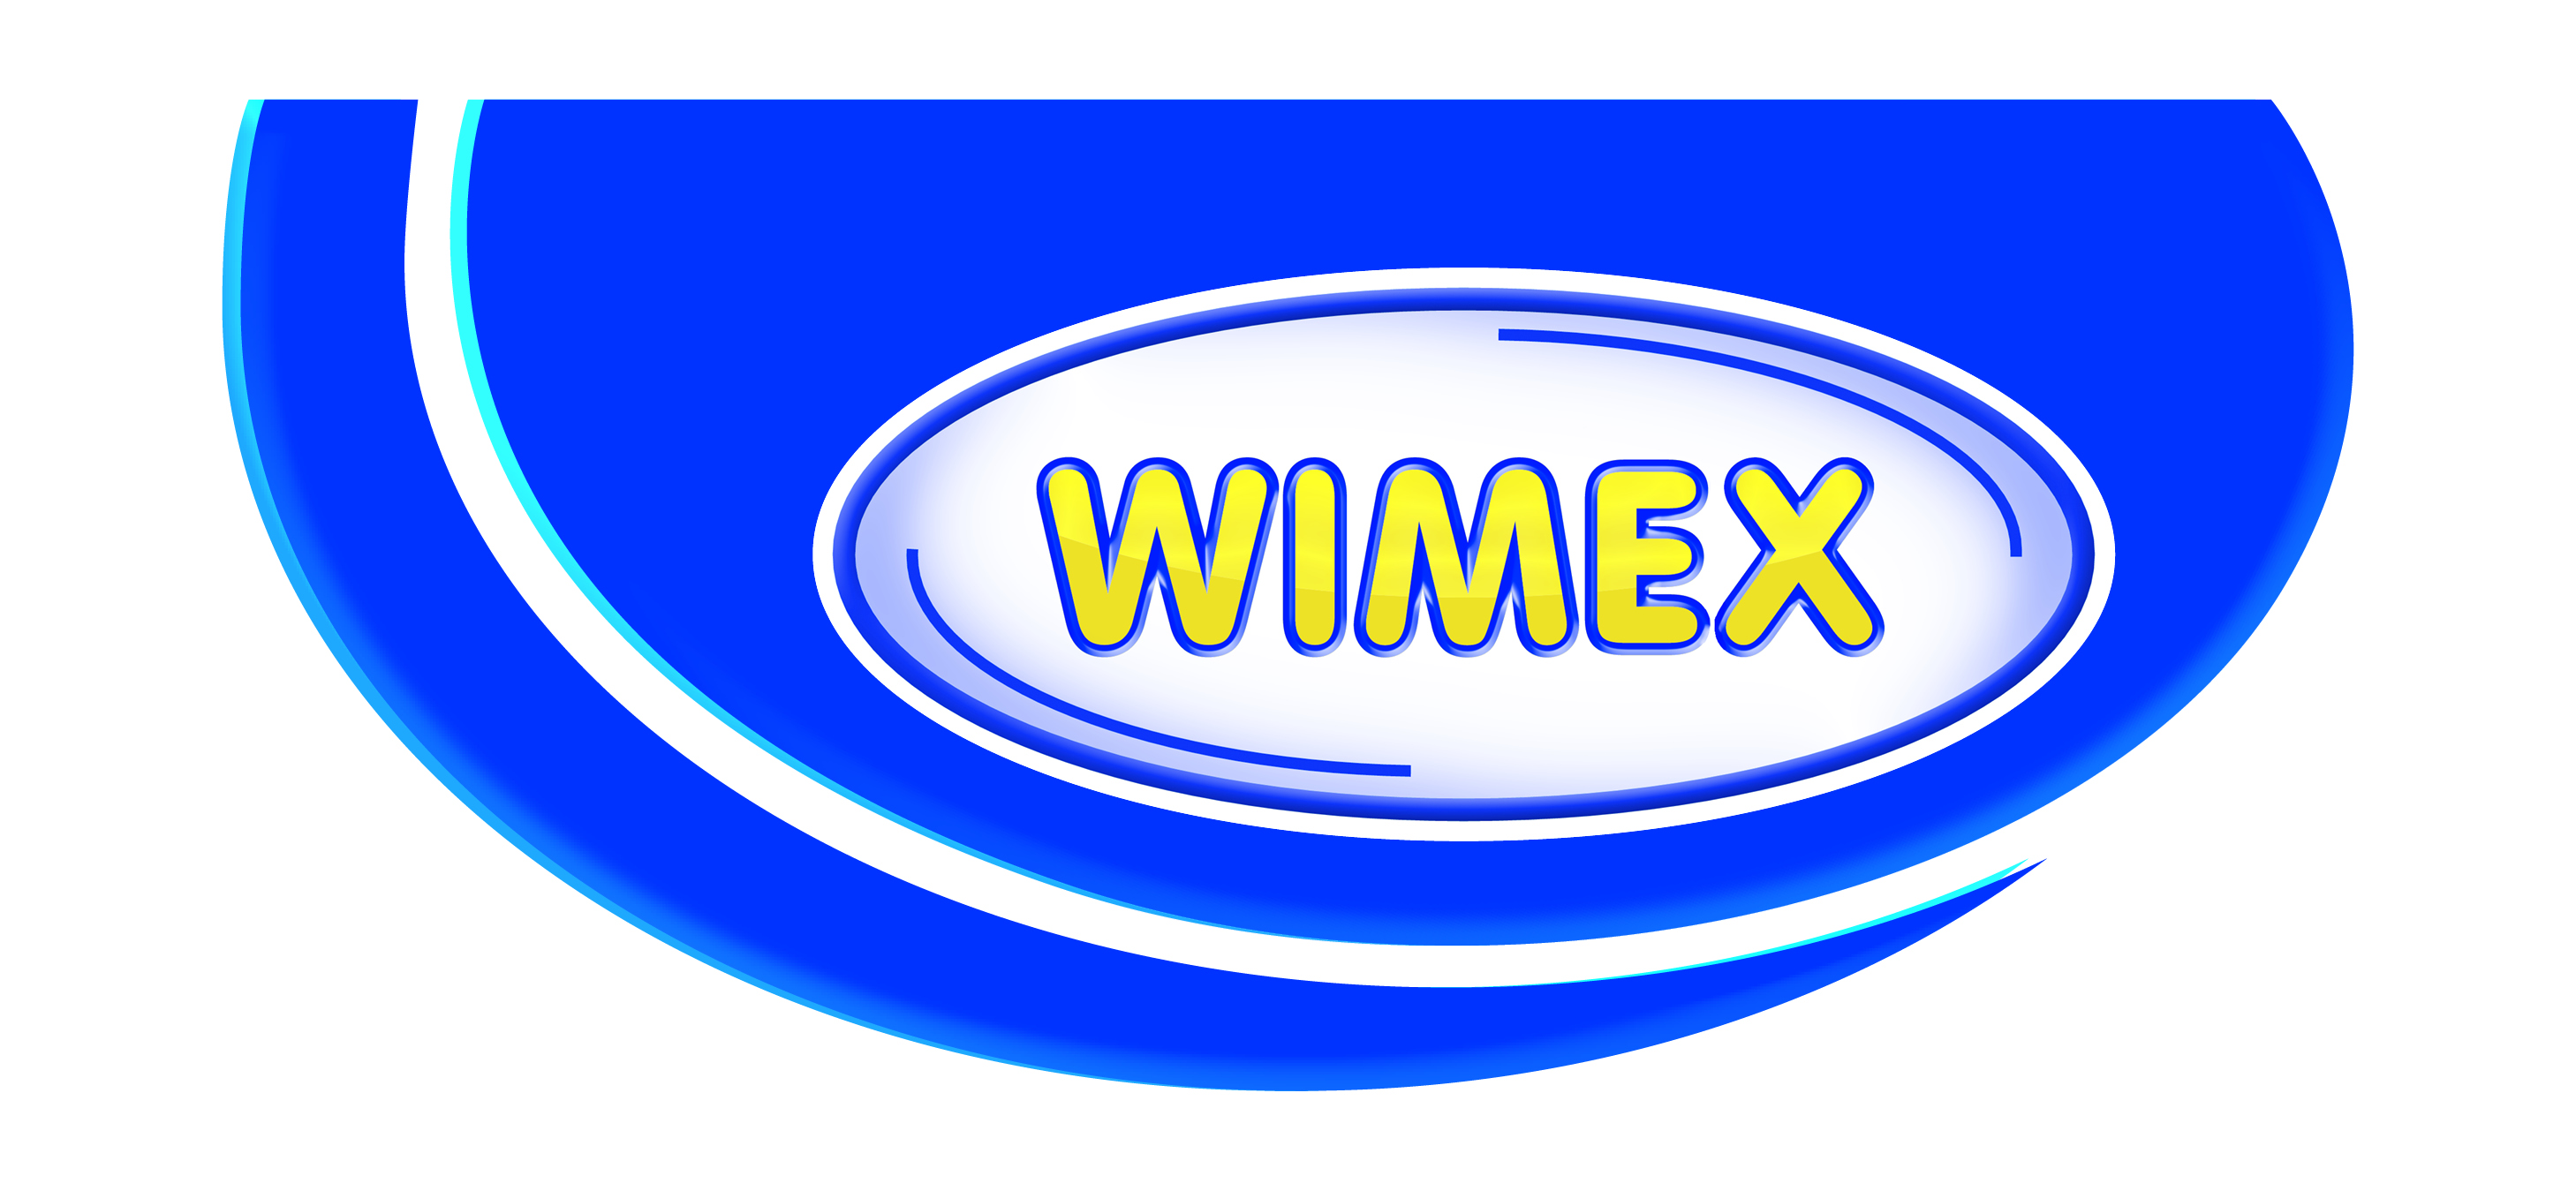 wimex